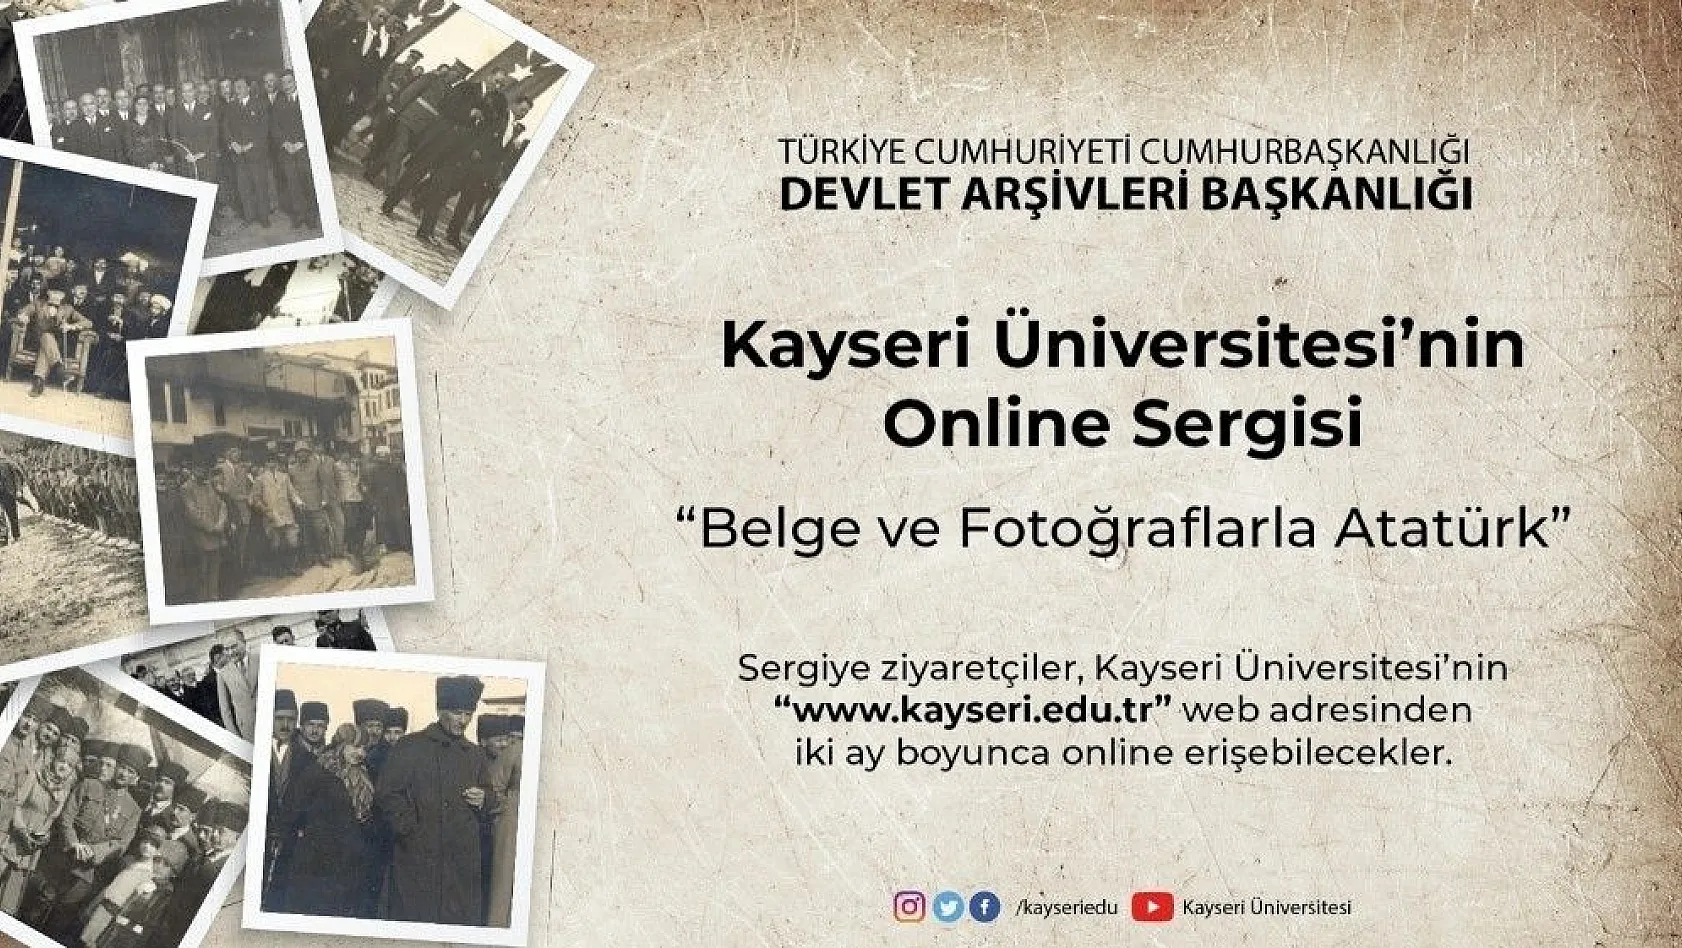 Kayseri Üniversitesi'nde Online 'Atatürk' Sergisi açıldı